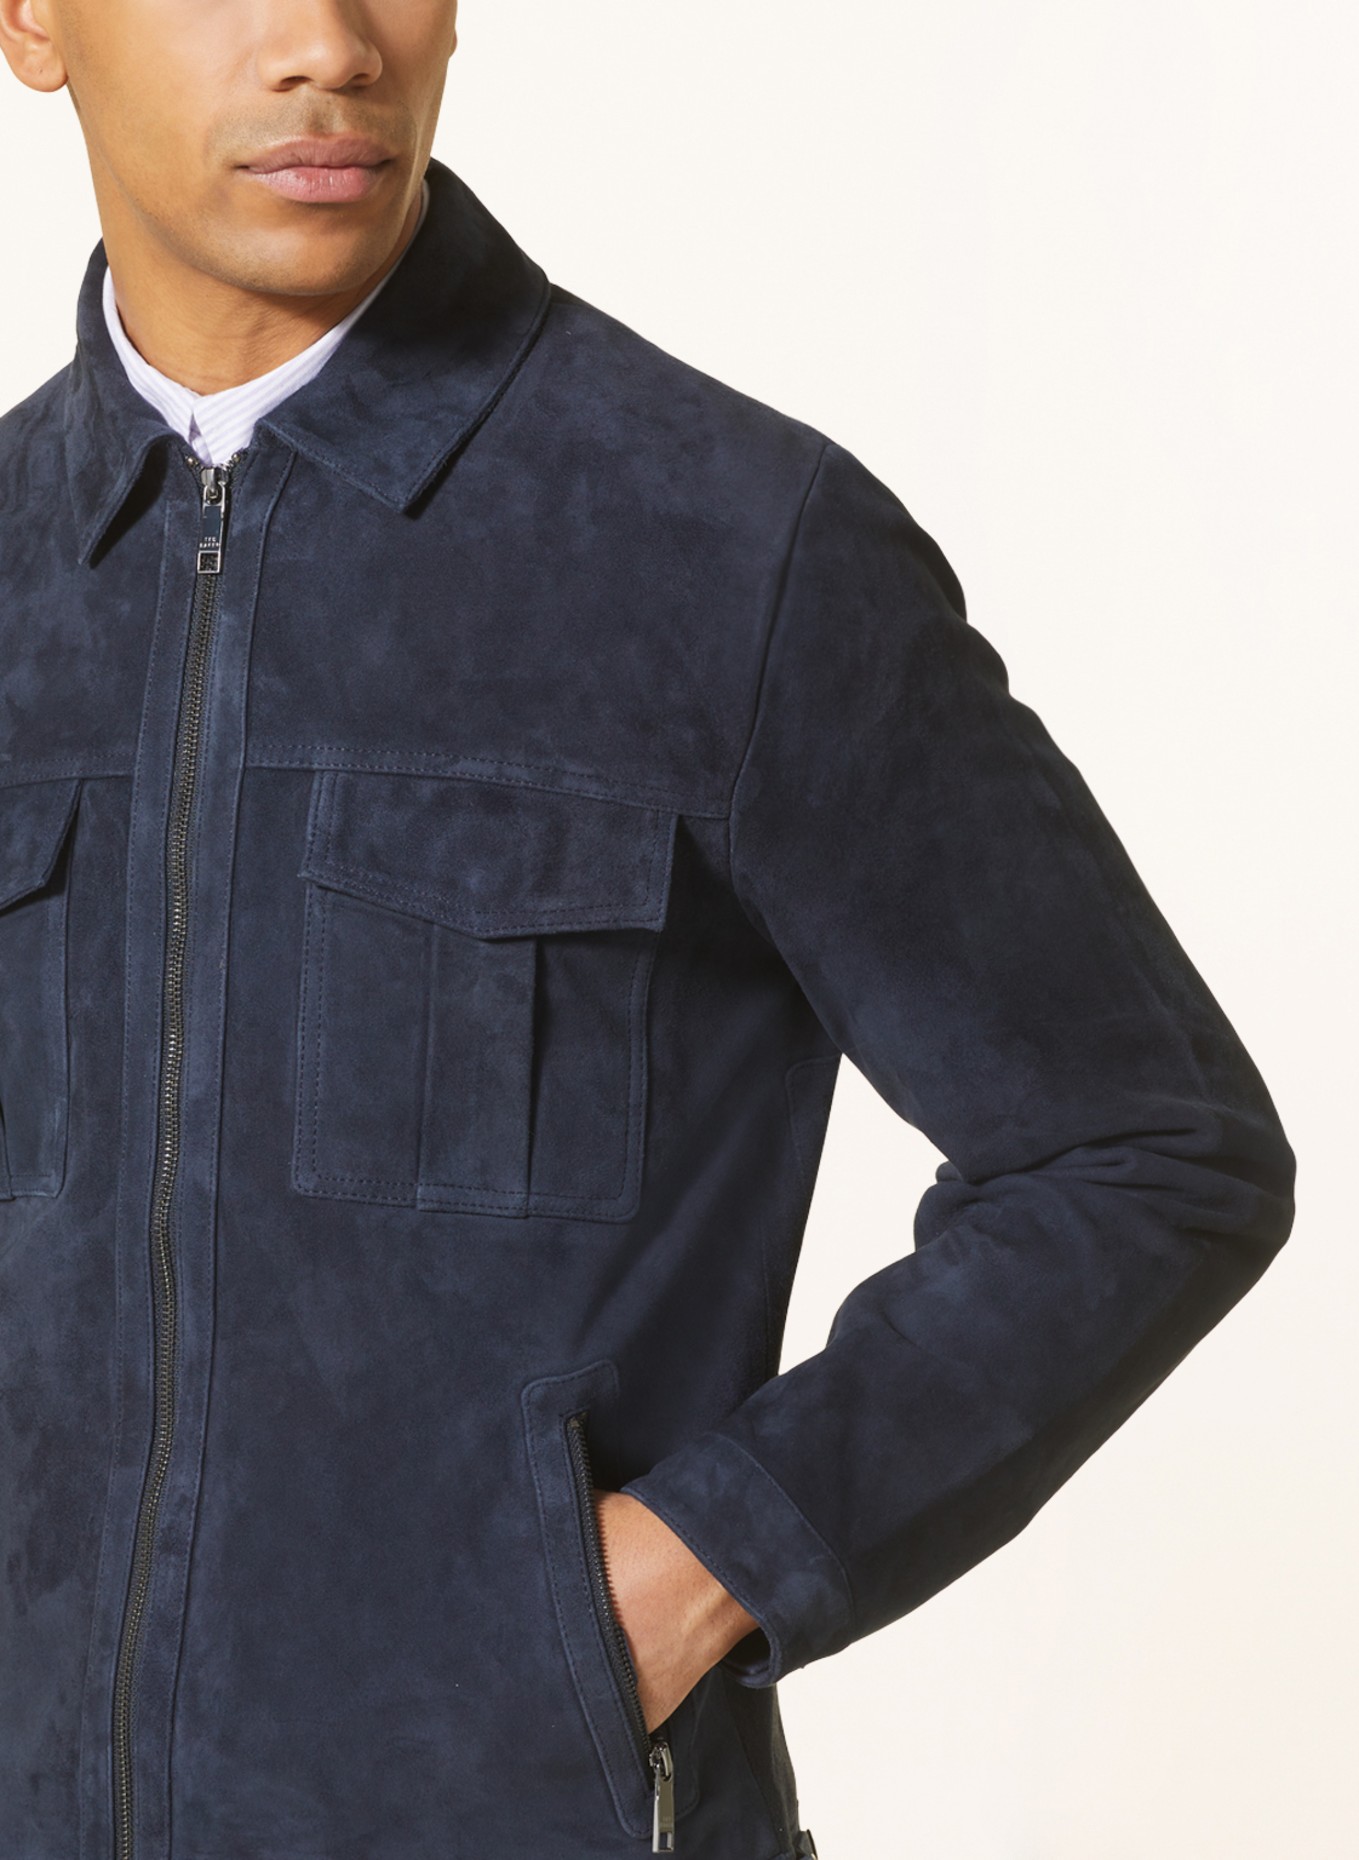 Ted Baker Black Shanco Shearling Leather Jacket - Size Large - Brand New! |  eBay